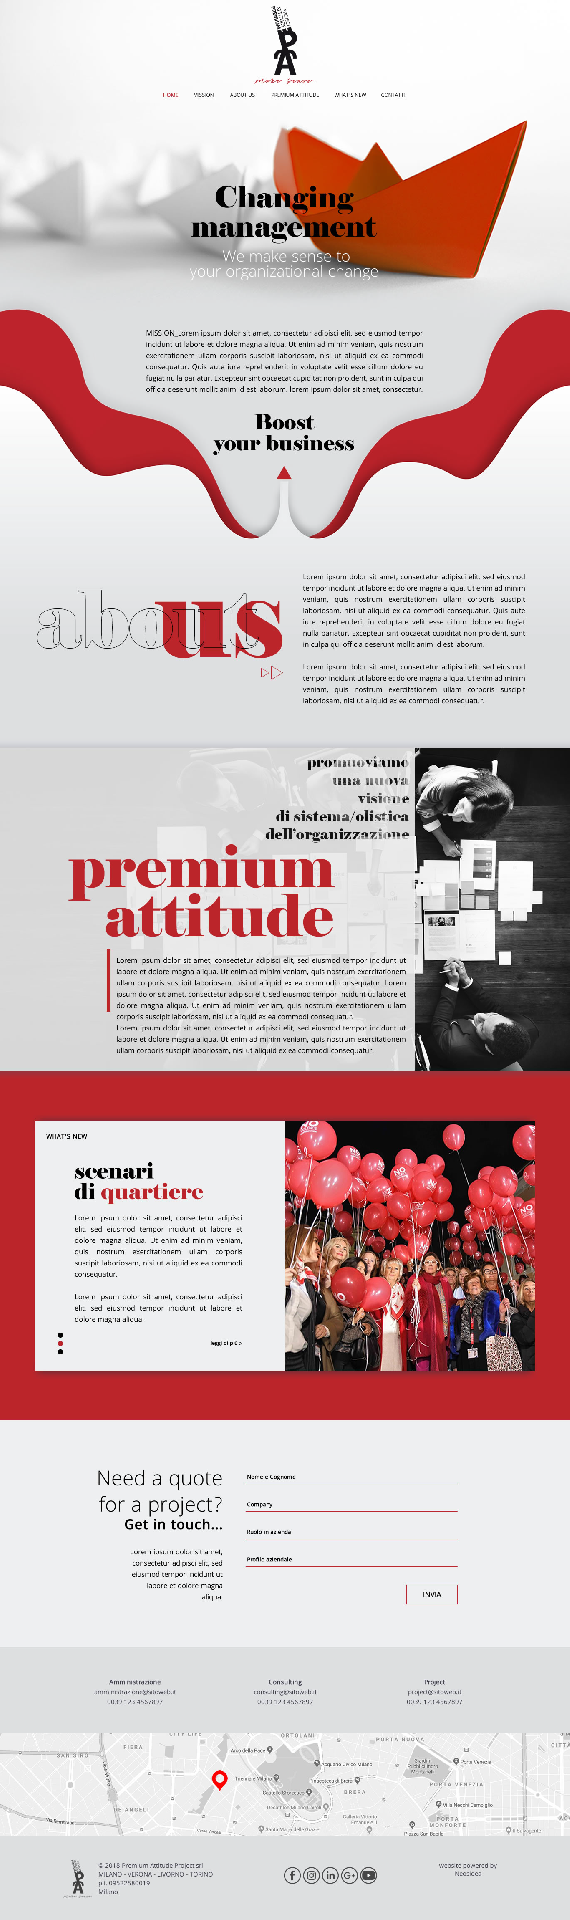 Premium Attitude Project, sito internet